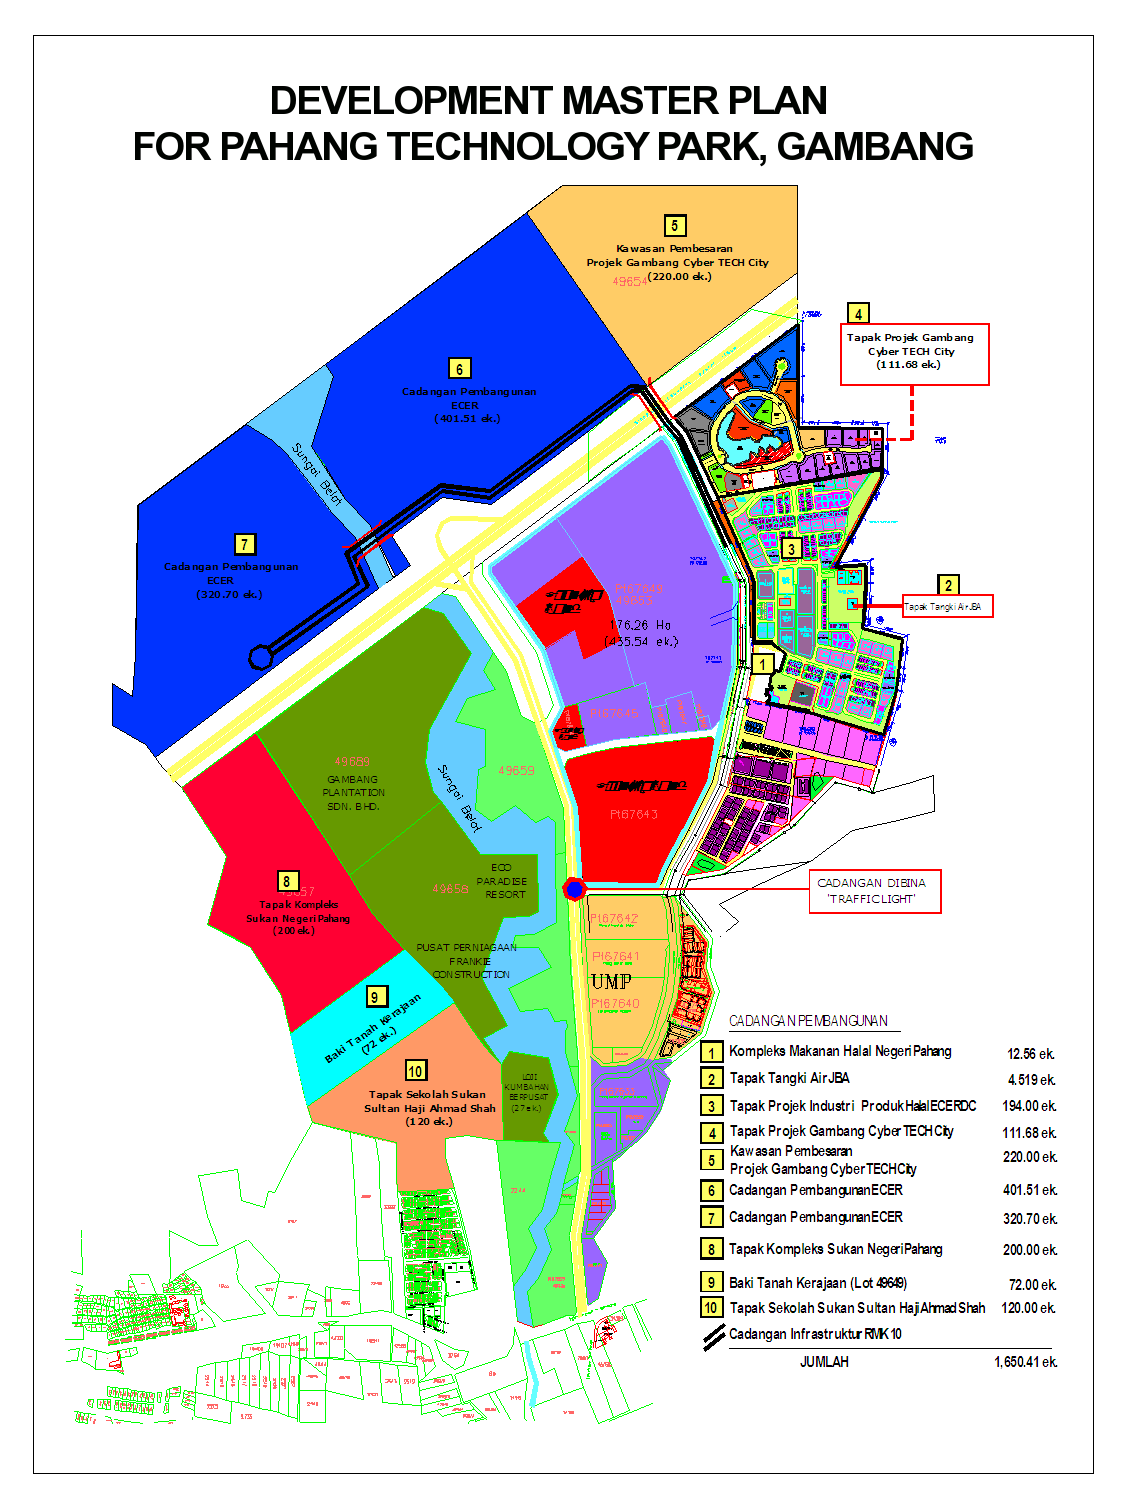 industry area - Pahang Technology Park (Gambang)